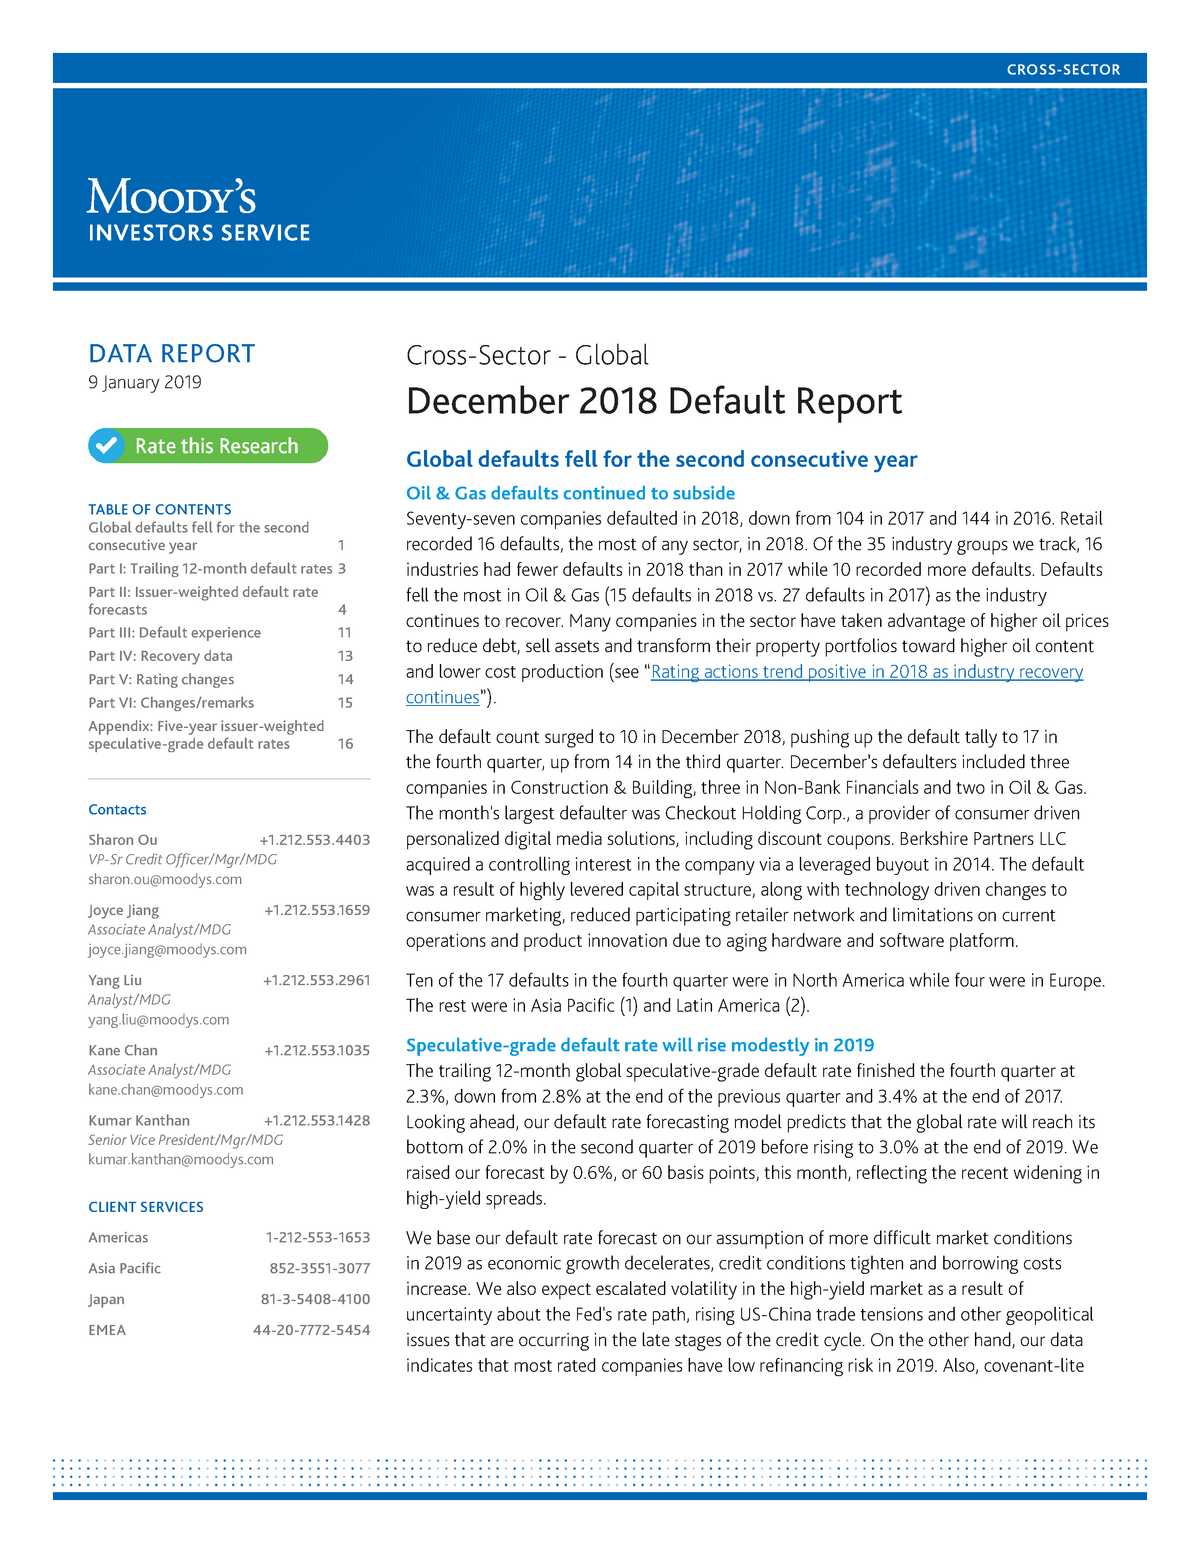 Moodys Report 2018 Global Default Rate DATA REPORT